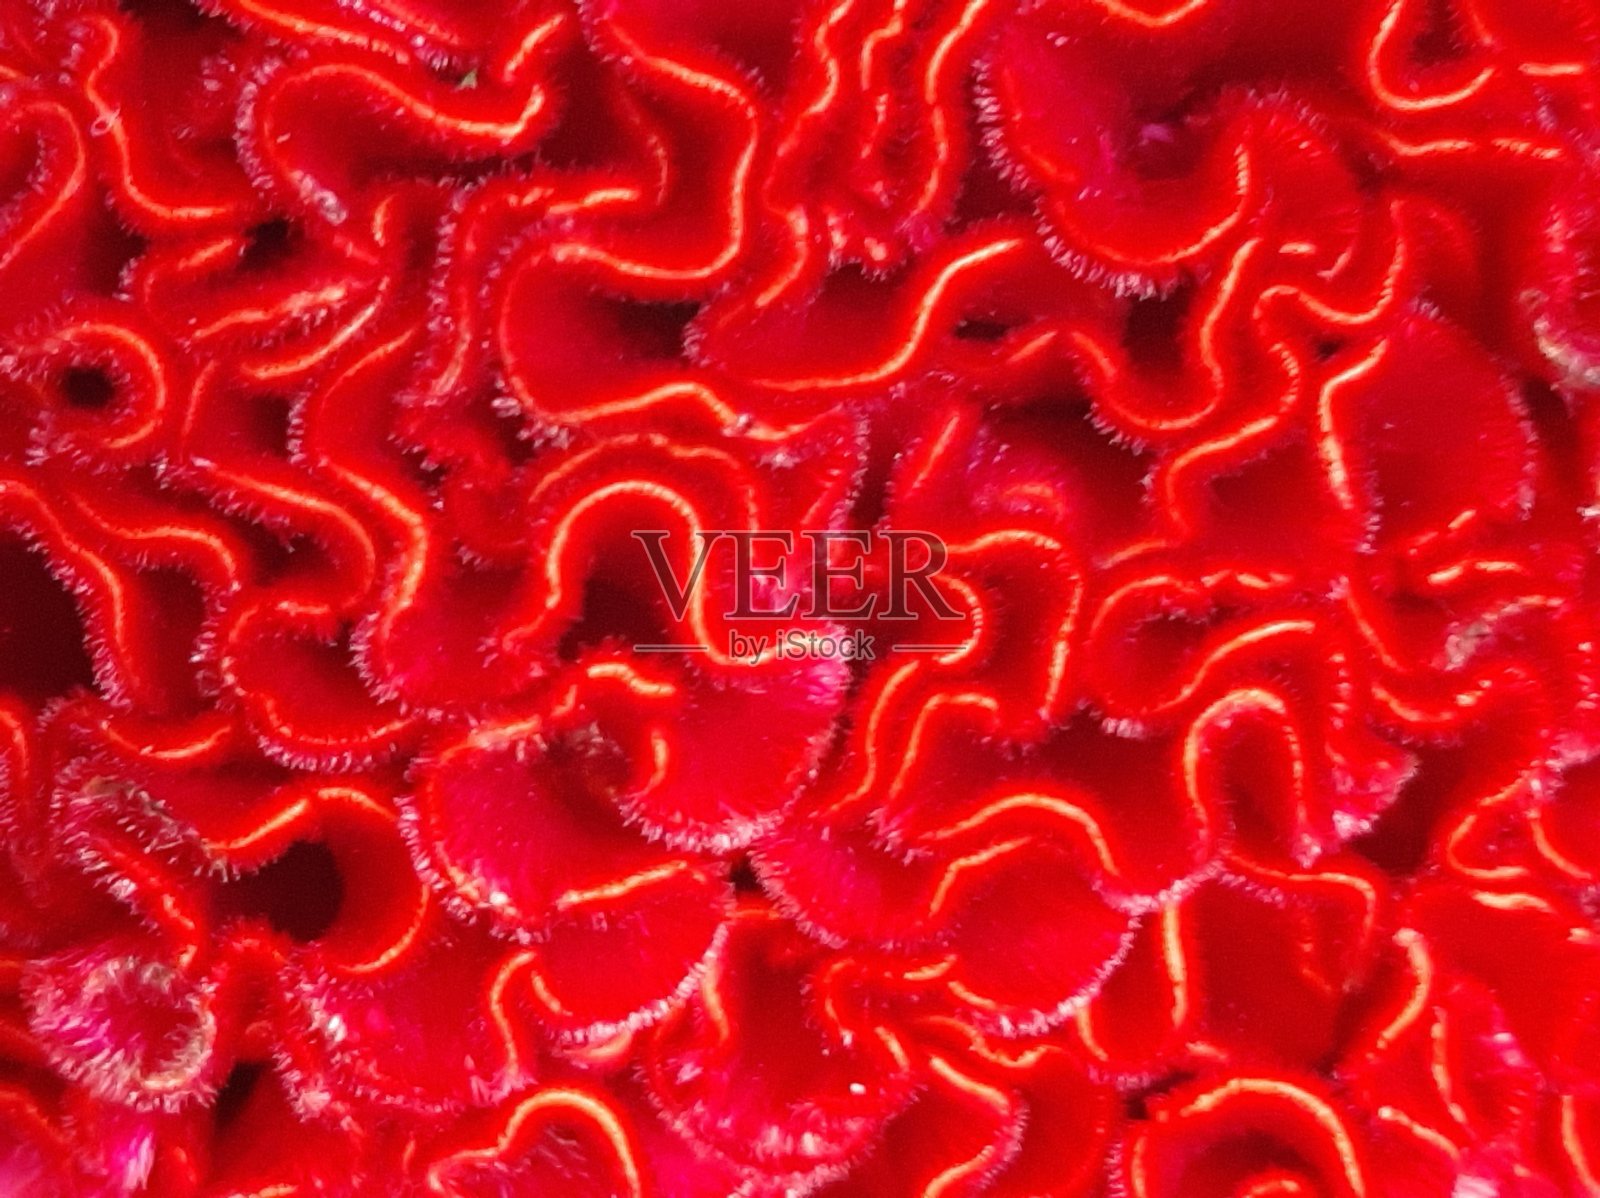 红色天鹅绒卷曲结构的脑花照片摄影图片